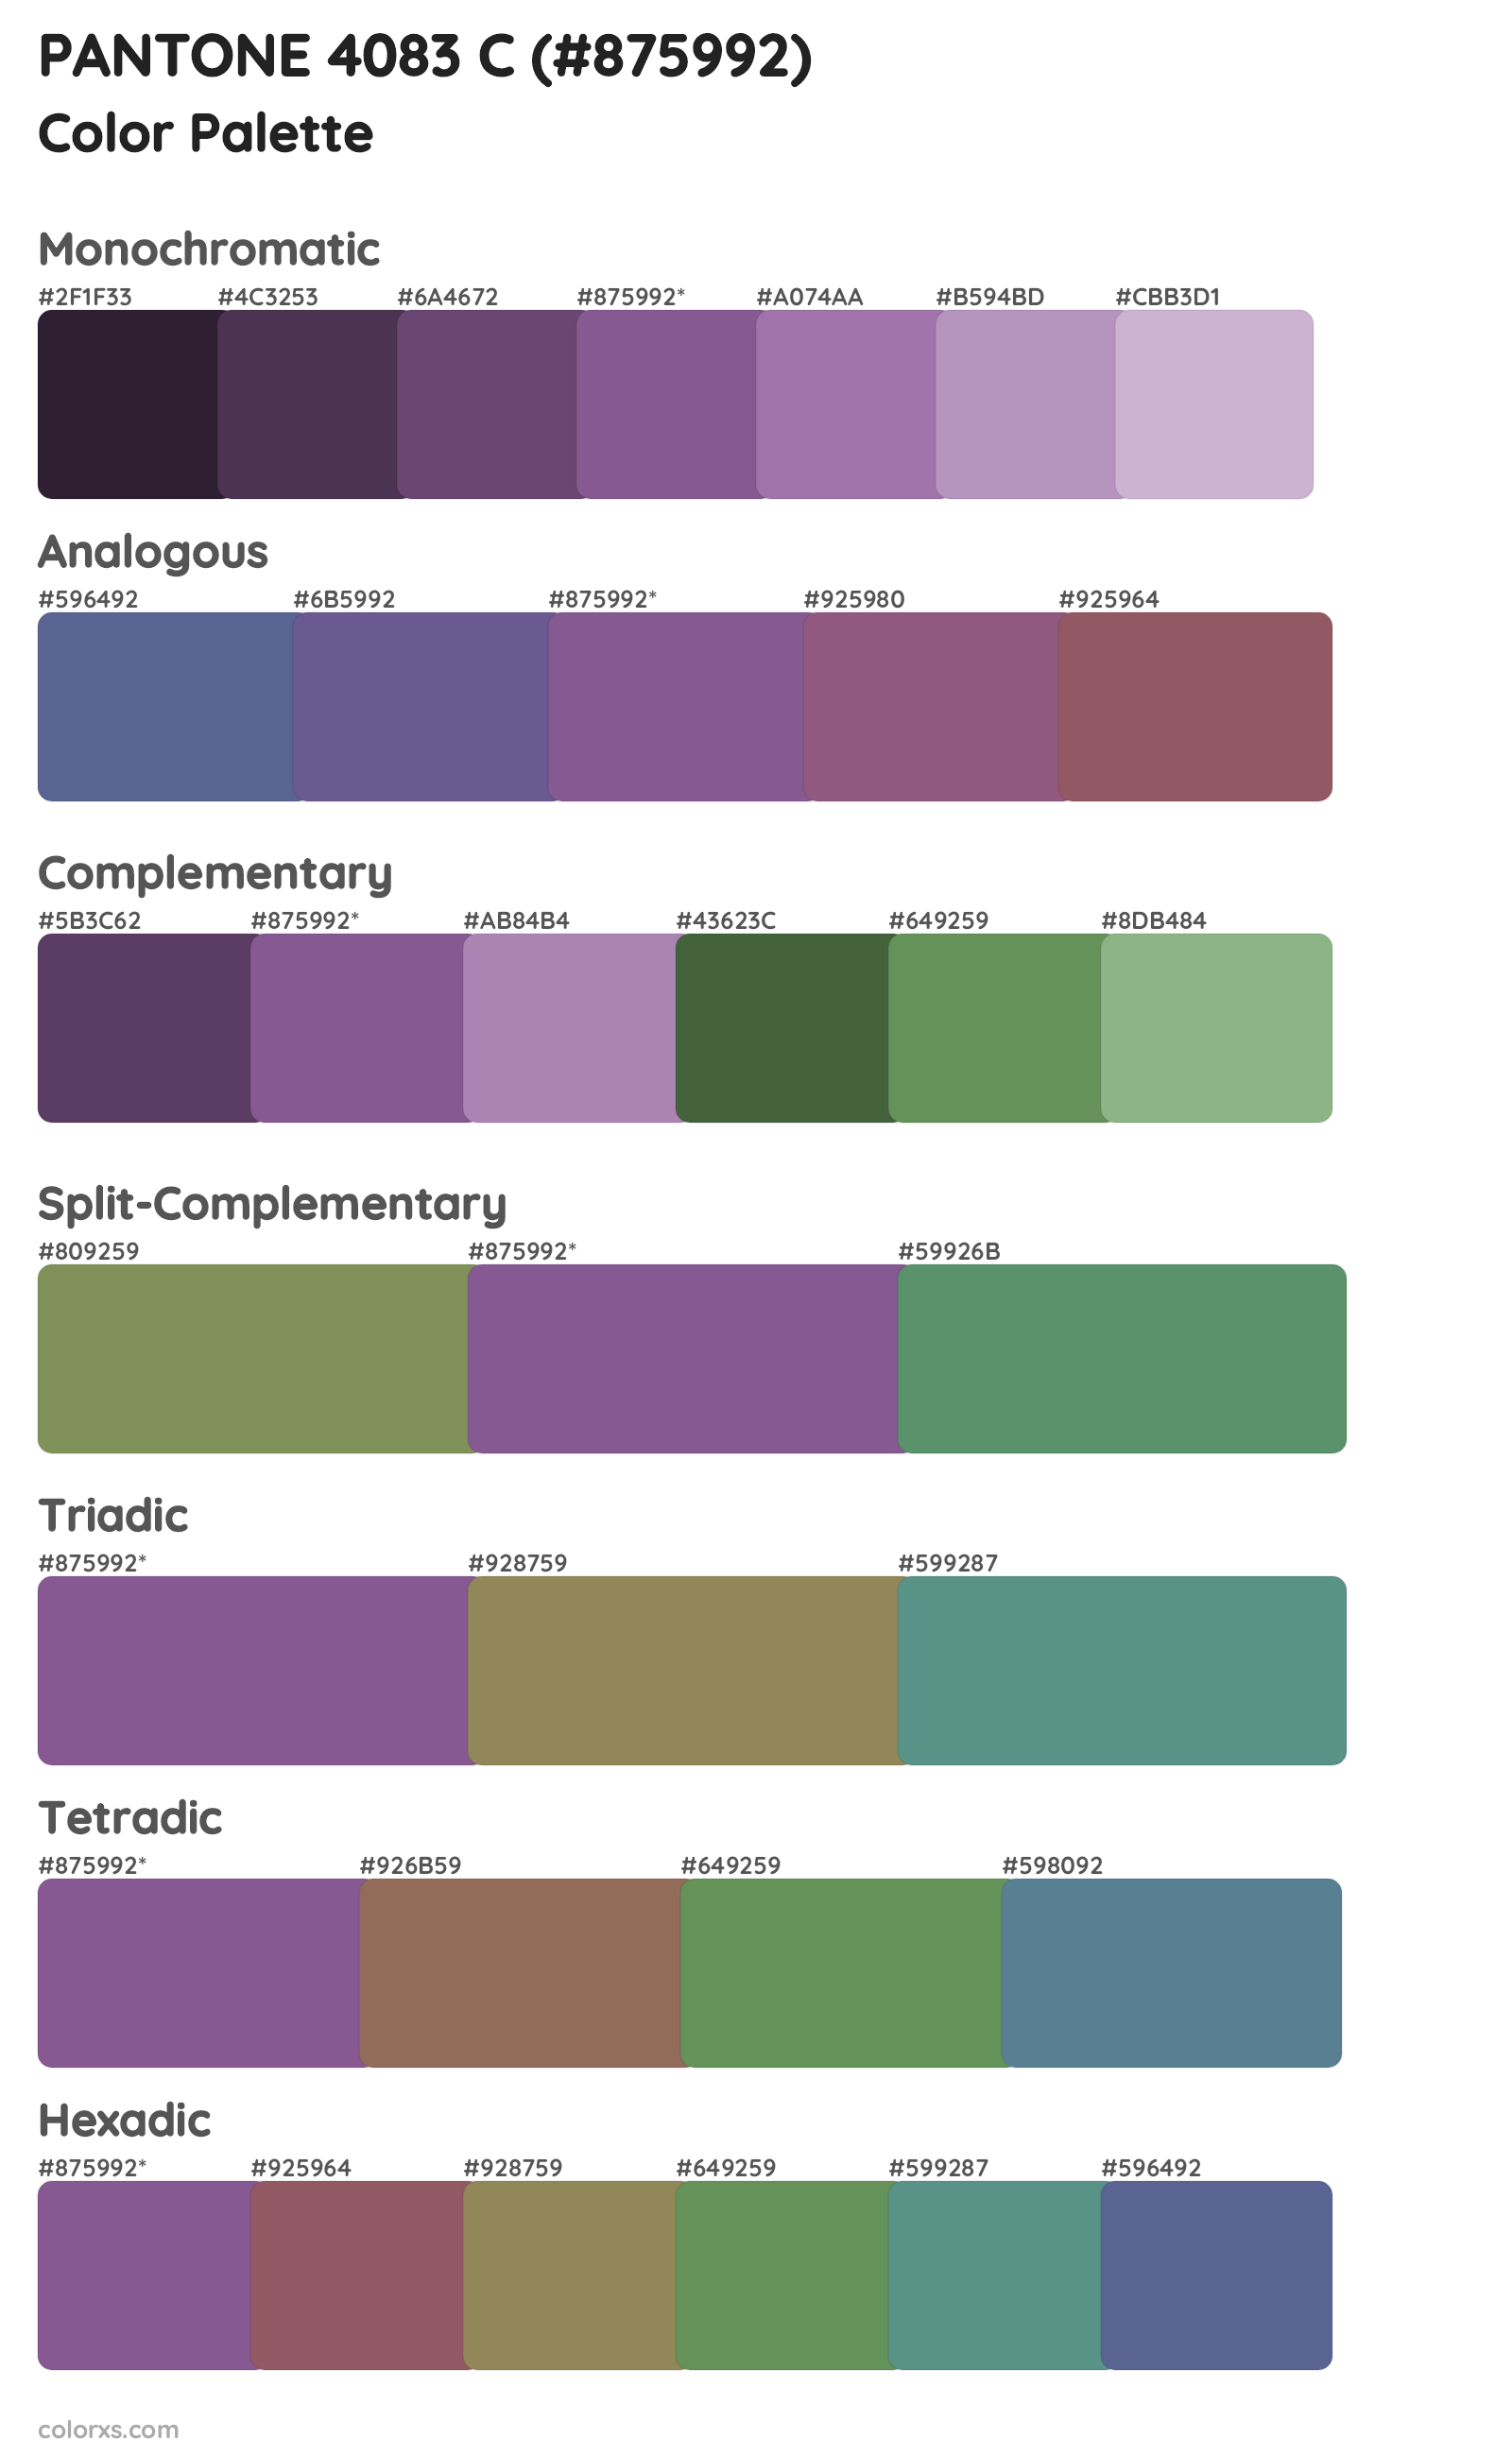 PANTONE 4083 C Color Scheme Palettes